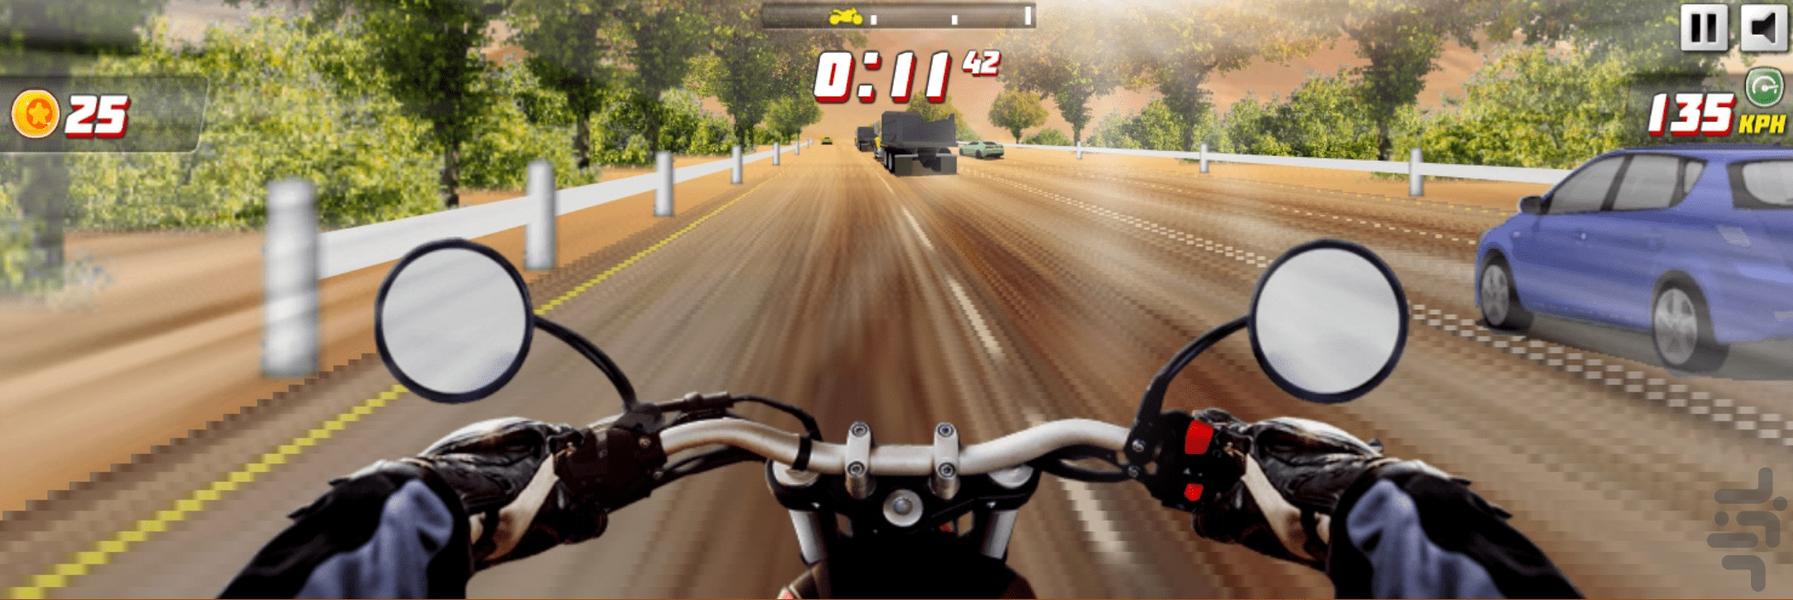 بازی موتورسواری در بزرگراه - Gameplay image of android game